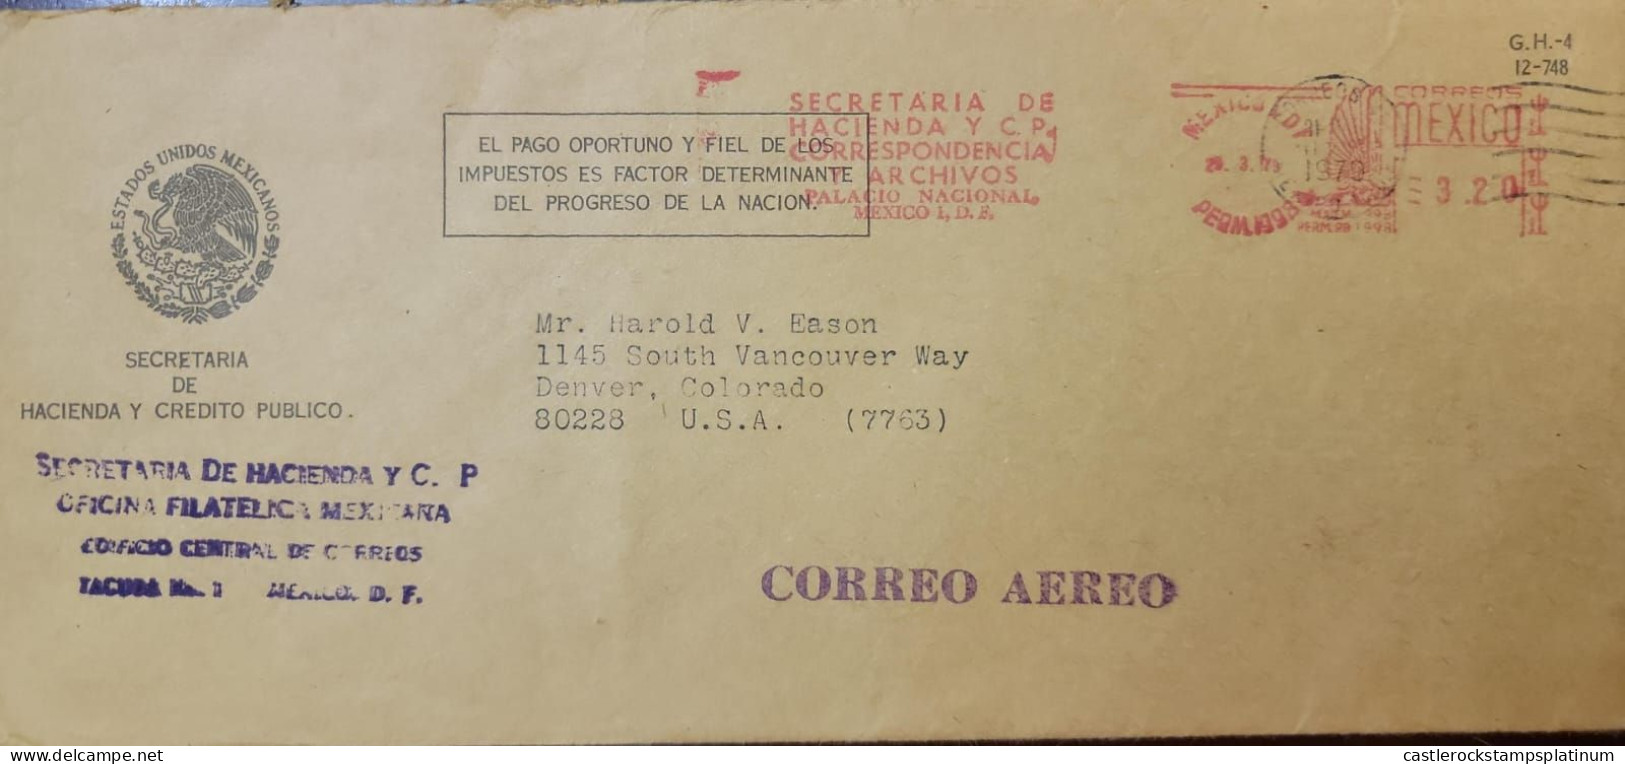 O) 1979 MEXICO, METERSTAMP, SECRETARIA DE HACIENDA Y C.P - ESTADOS UNIDOS MEXICANOS, CIRCULATED TO USA - Mexico